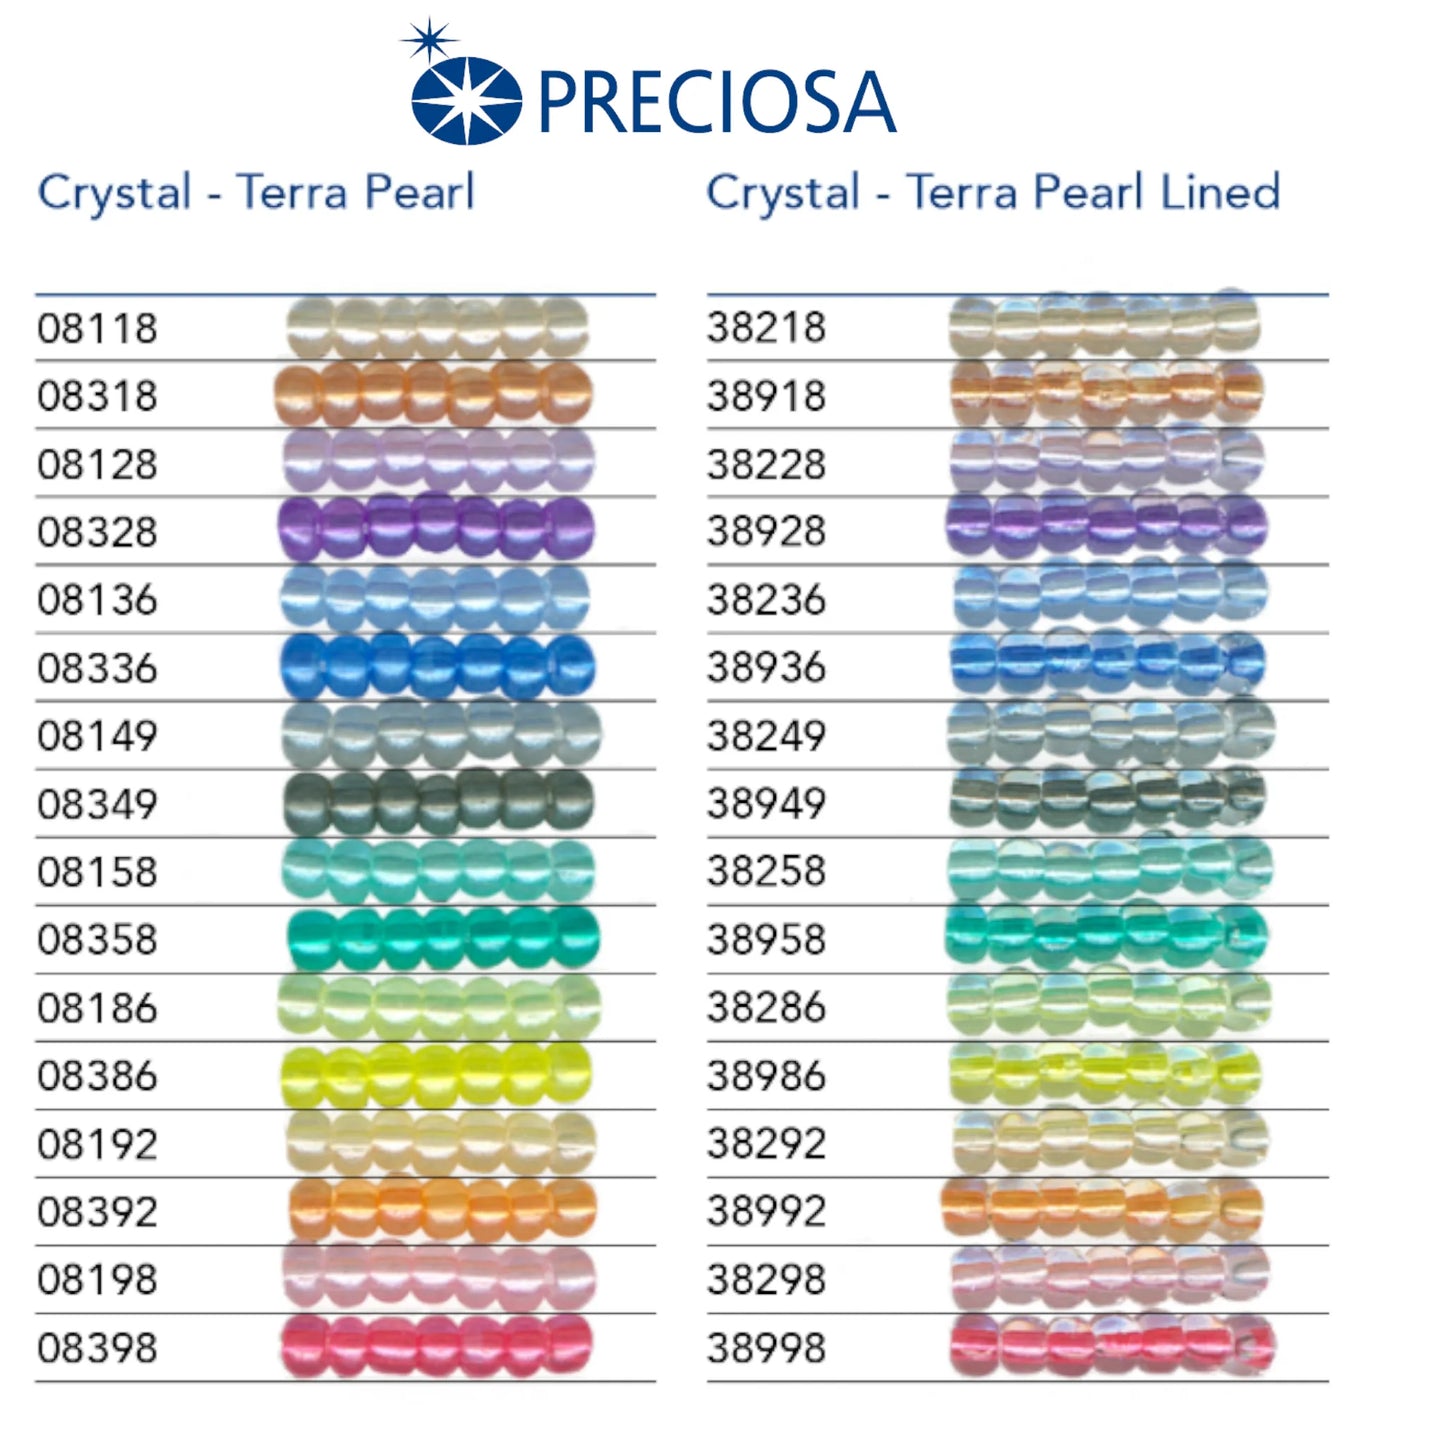 38236 Rocailles tchèques PRECIOSA Rocailles 10/0 bleu clair. Cristal – Terra Pearl doublé.